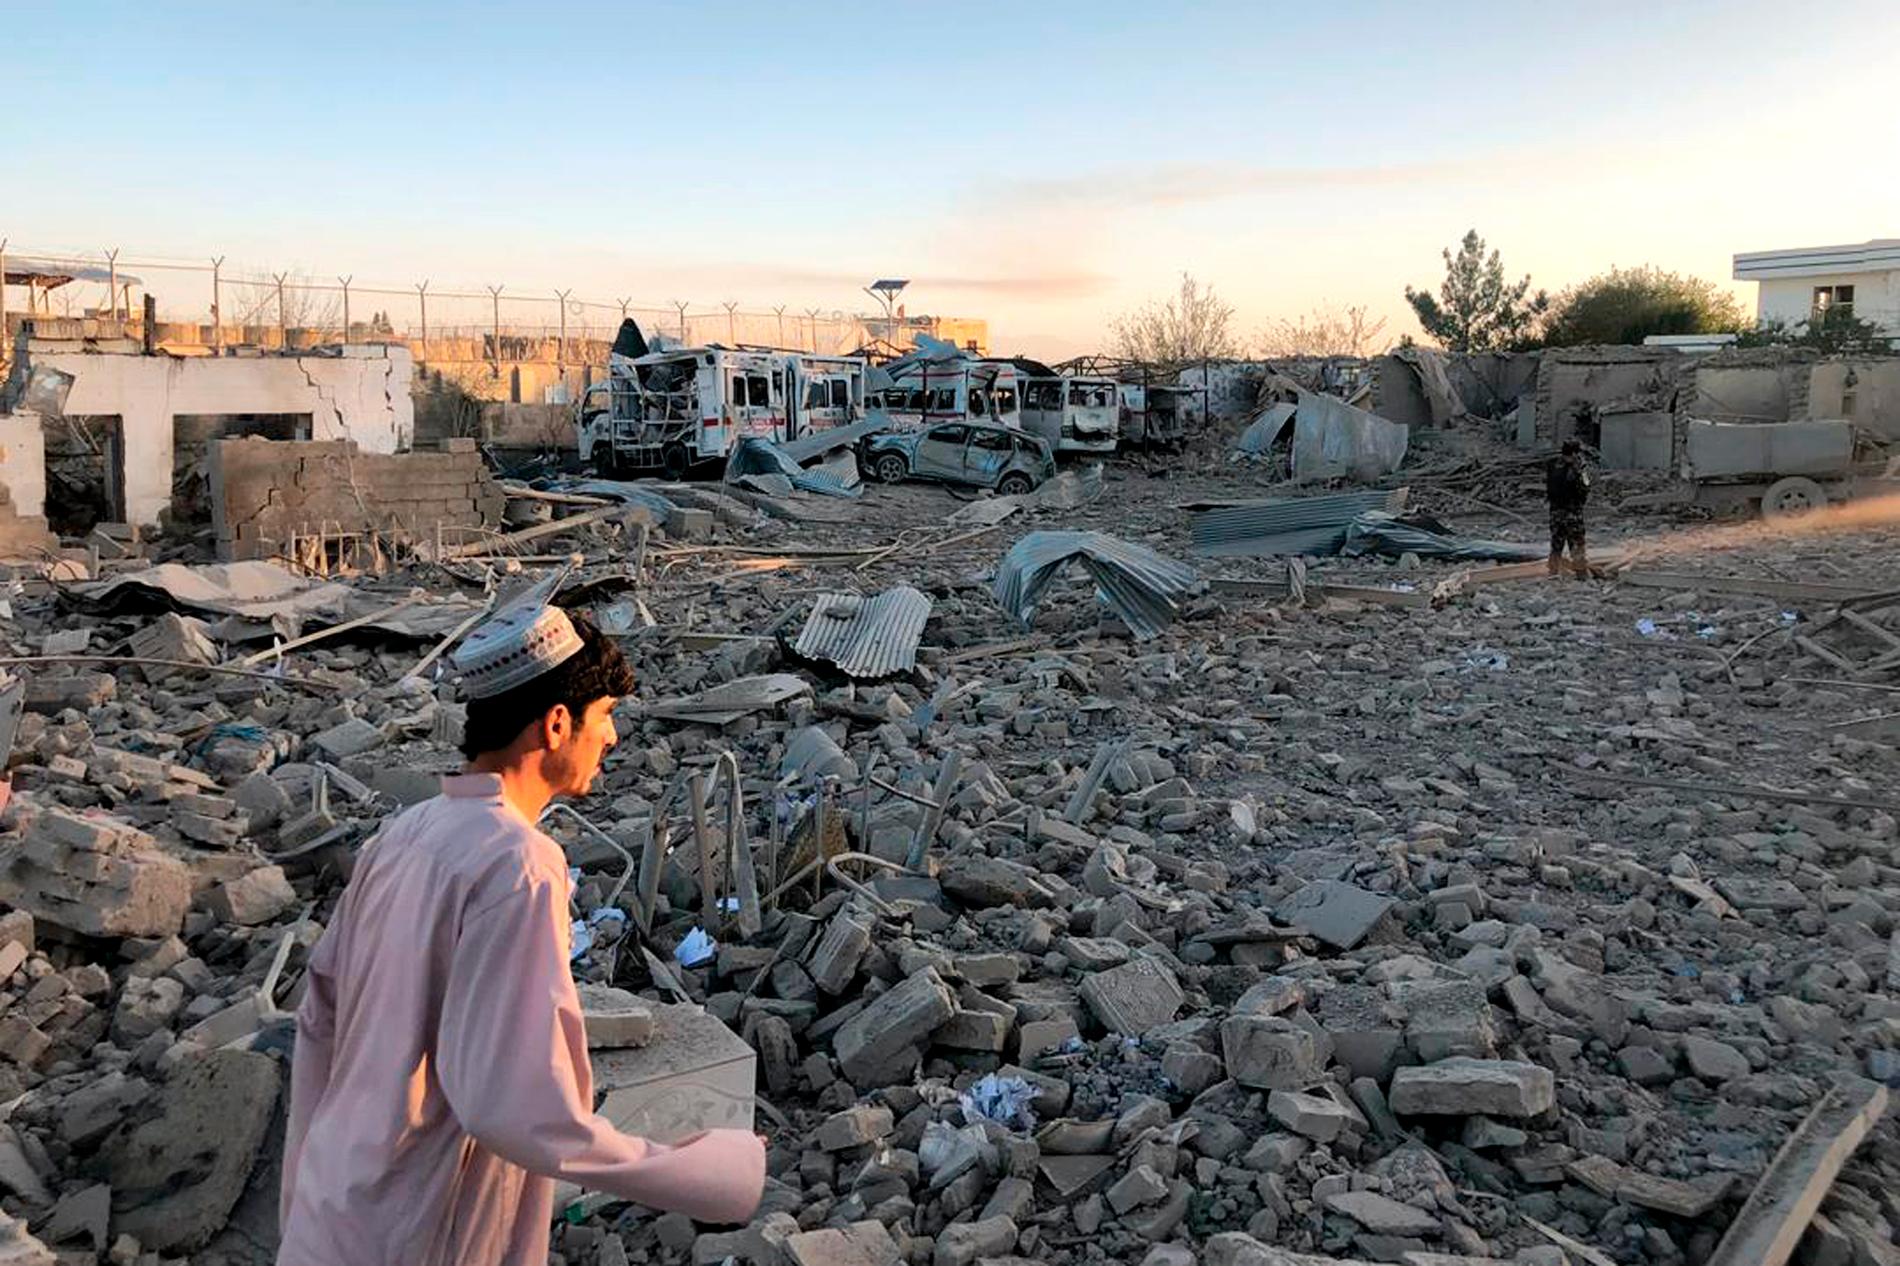 En bil lastad med sprängämnen dödade minst 20 personer vid ett sjukhus i staden Qalat i Afghanistan.